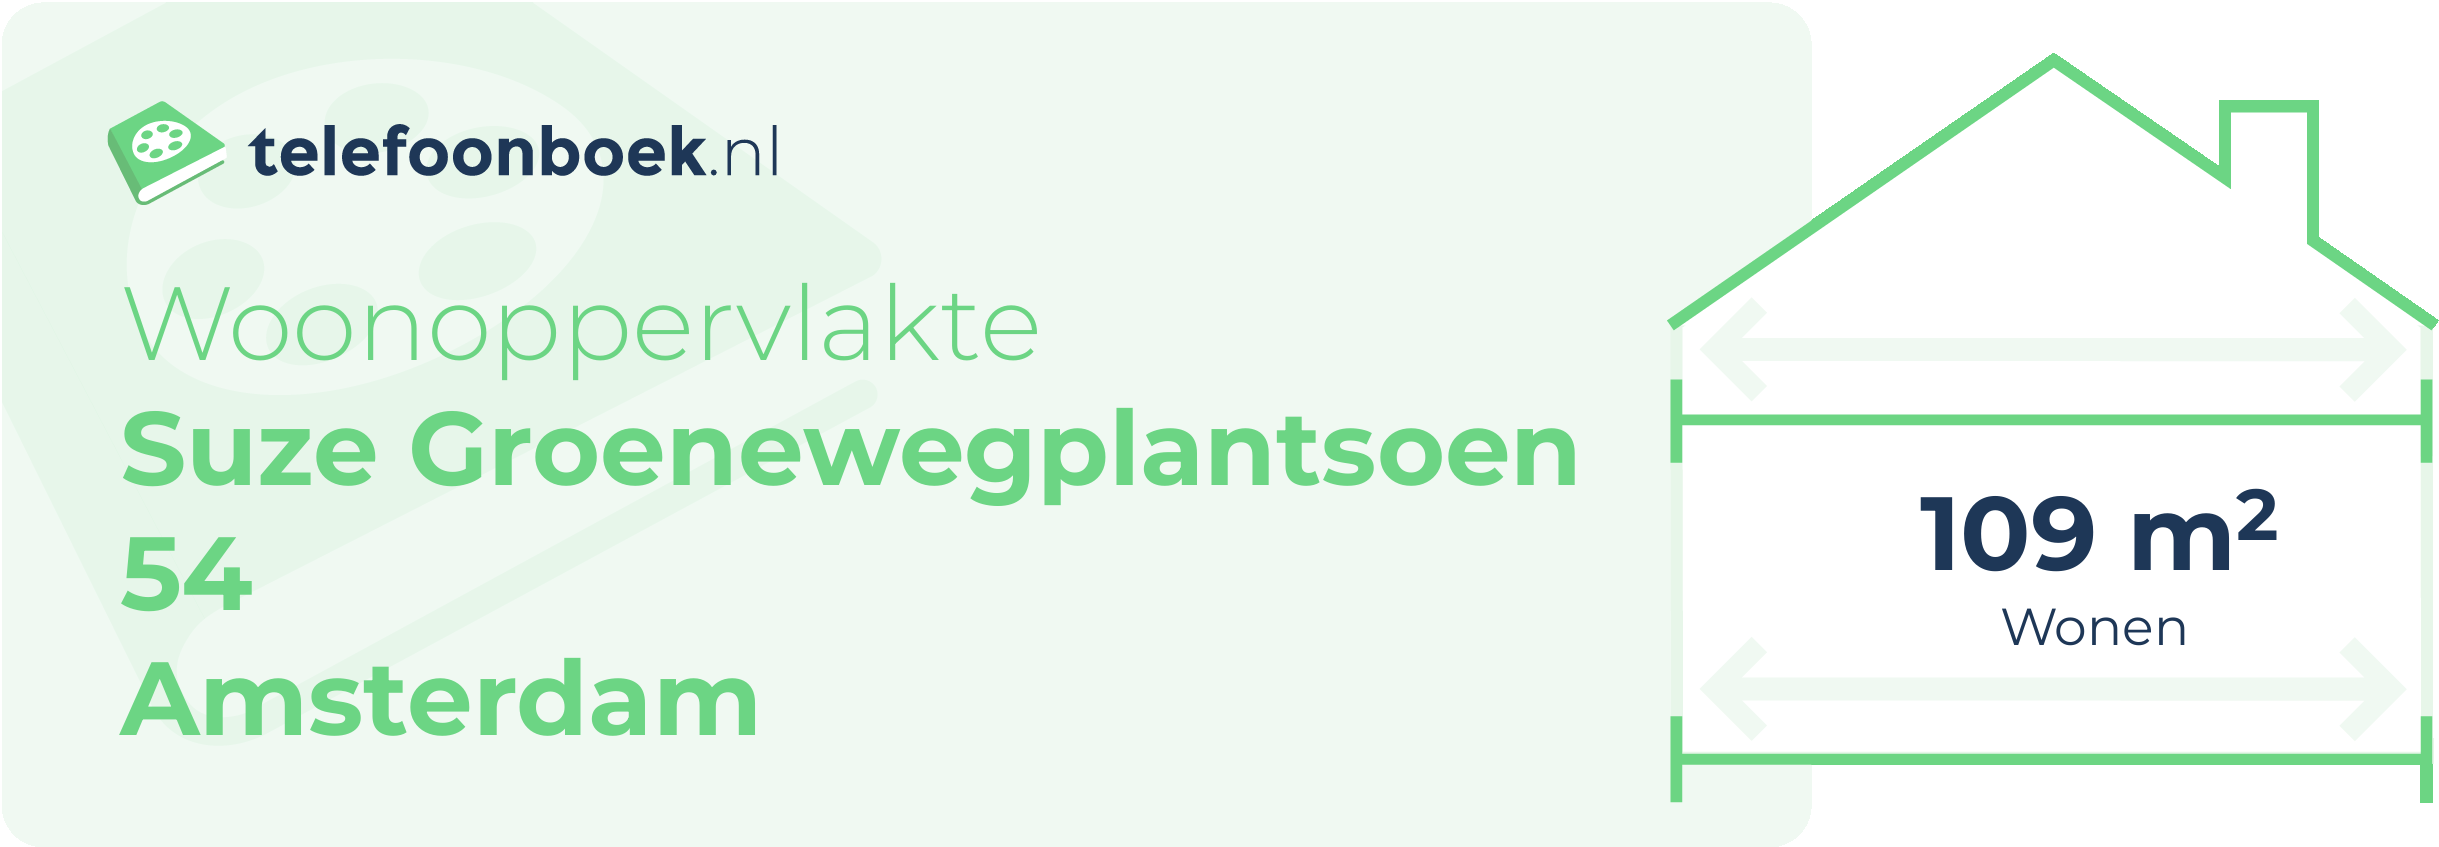 Woonoppervlakte Suze Groenewegplantsoen 54 Amsterdam